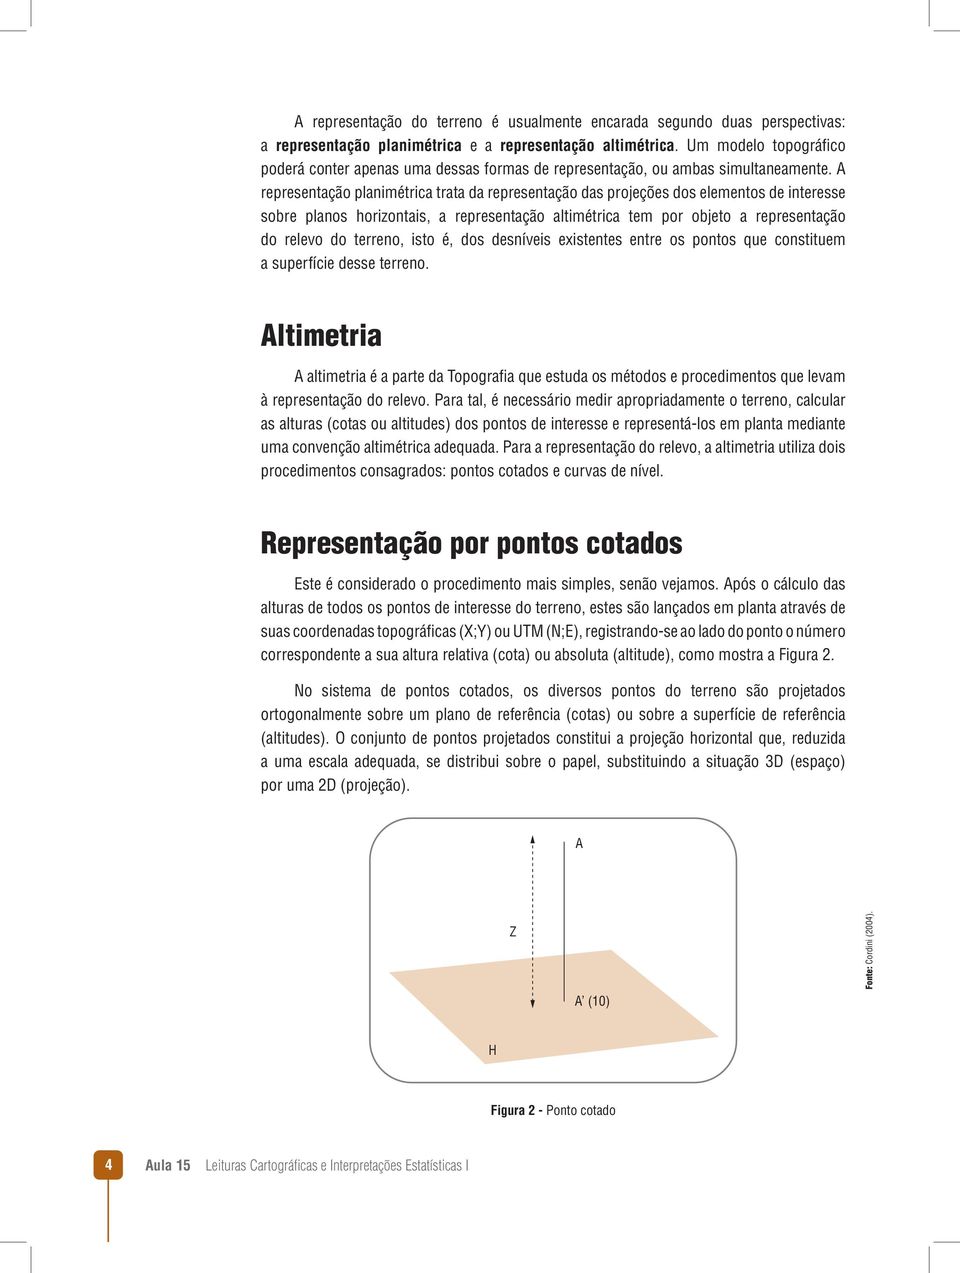 A representação planimétrica trata da representação das projeções dos elementos de interesse sobre planos horizontais, a representação altimétrica tem por objeto a representação do relevo do terreno,